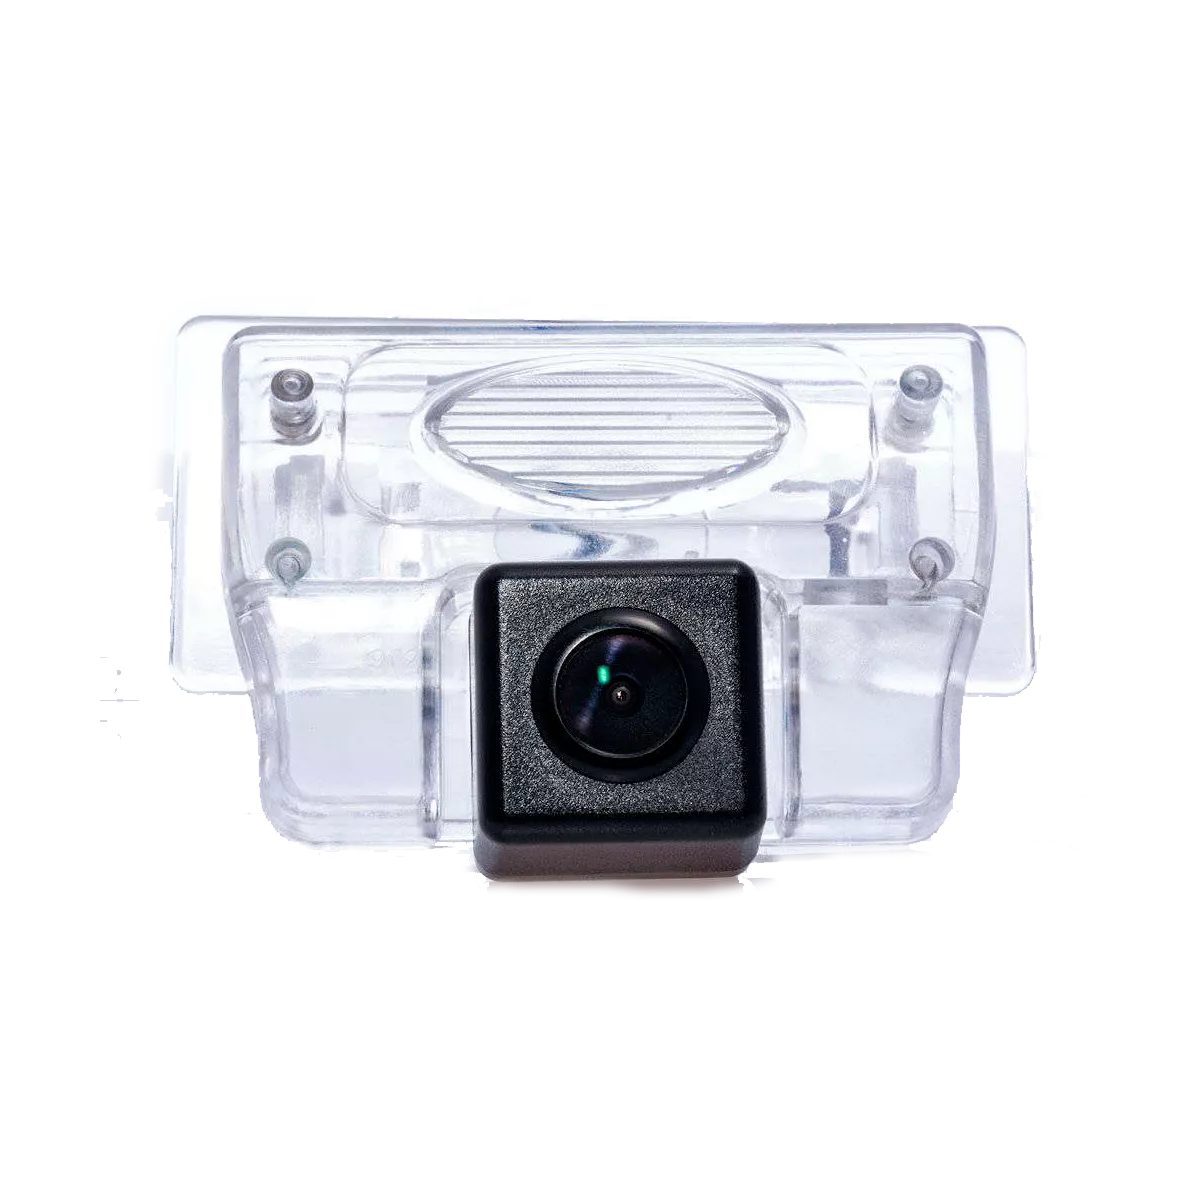 Камера заднего вида Fighter CS-CCD+FM-27 (Nissan)(36073465)